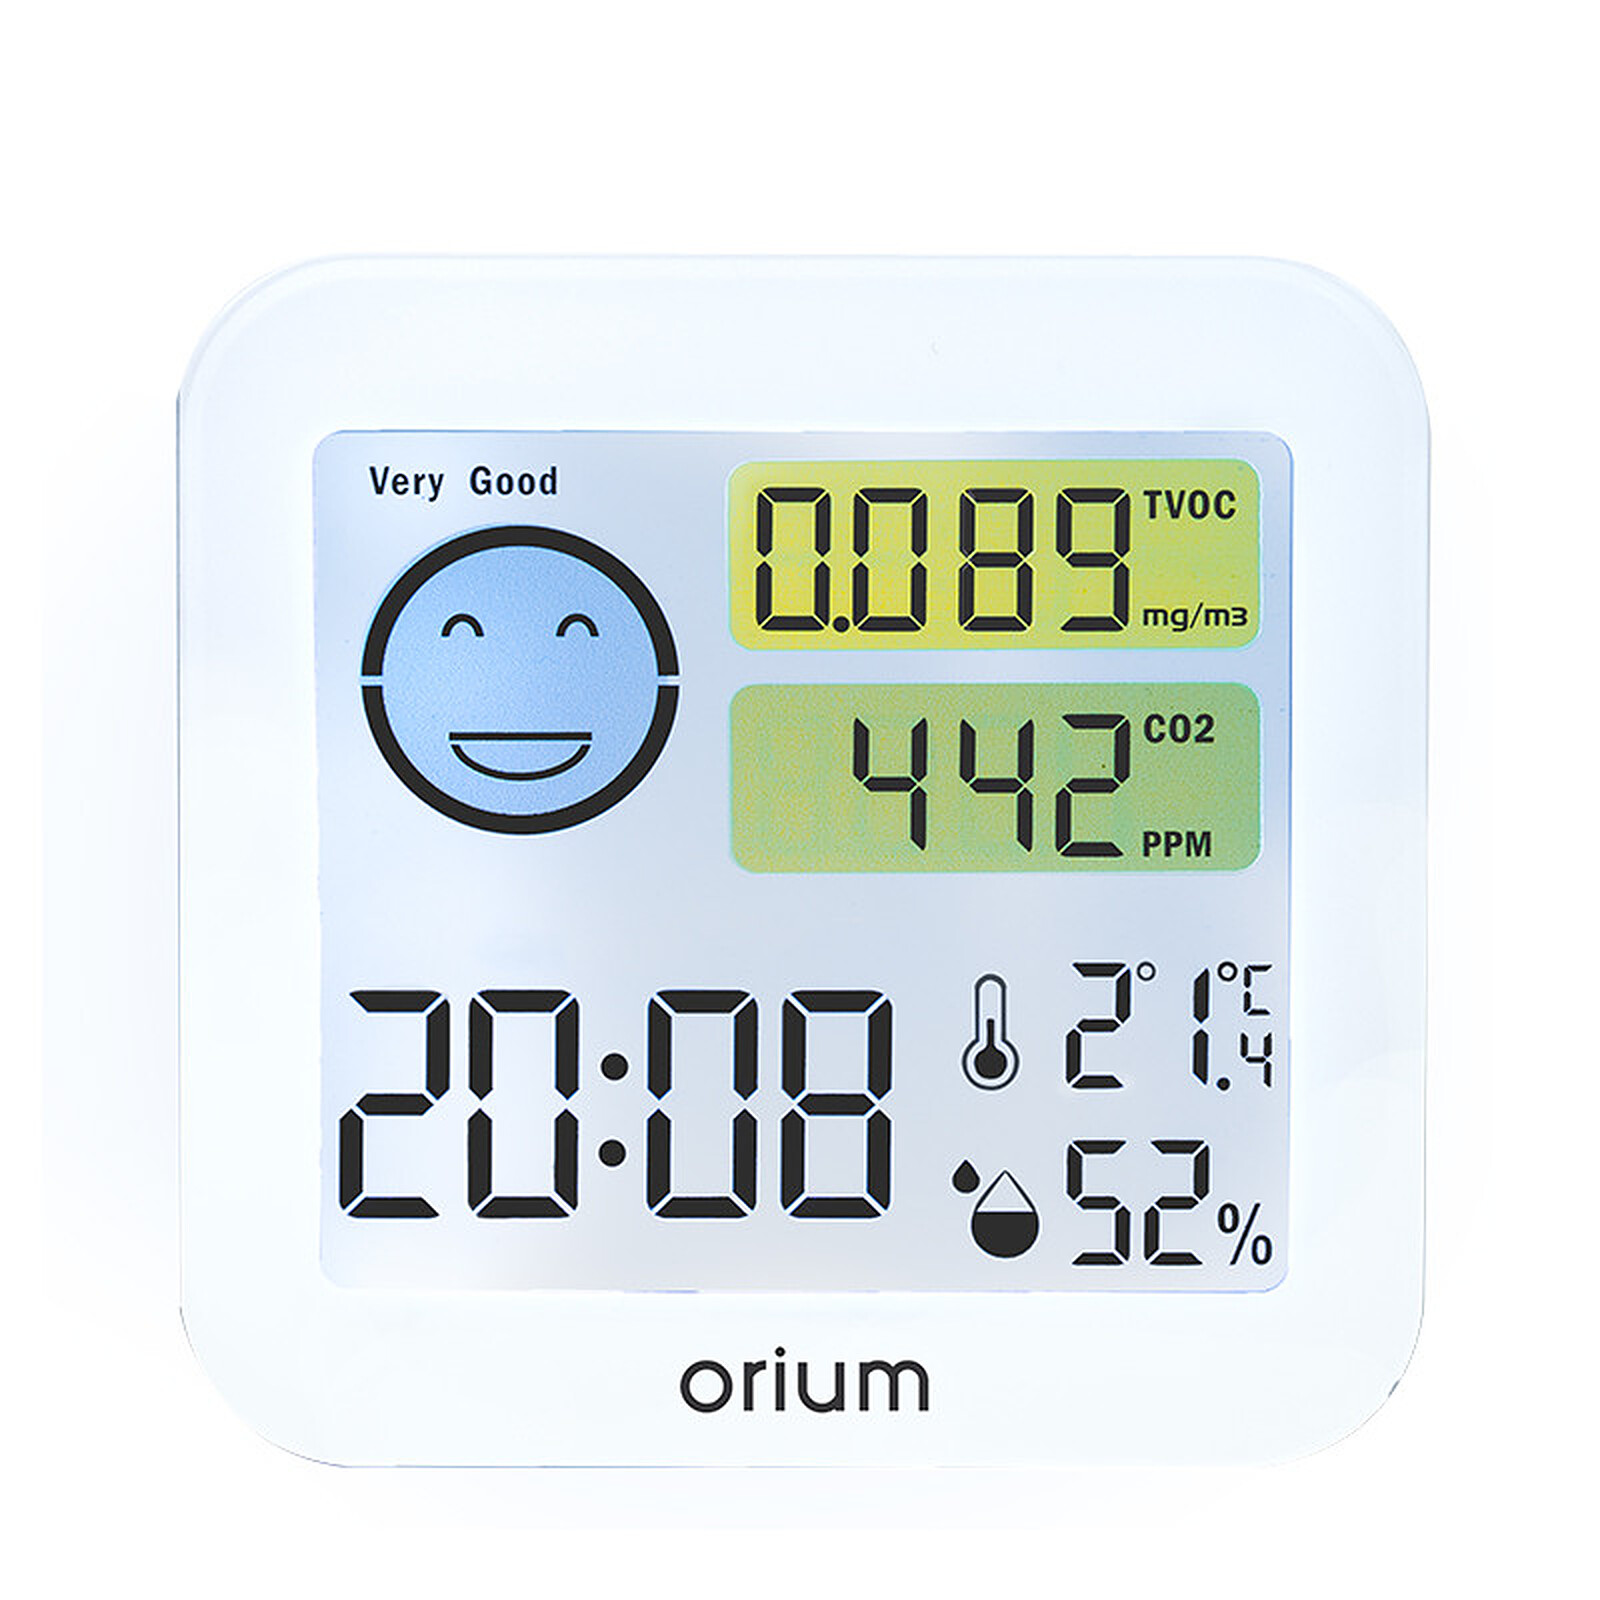 Orium Quaelis 20 - Controlador de calidad del aire - LDLC